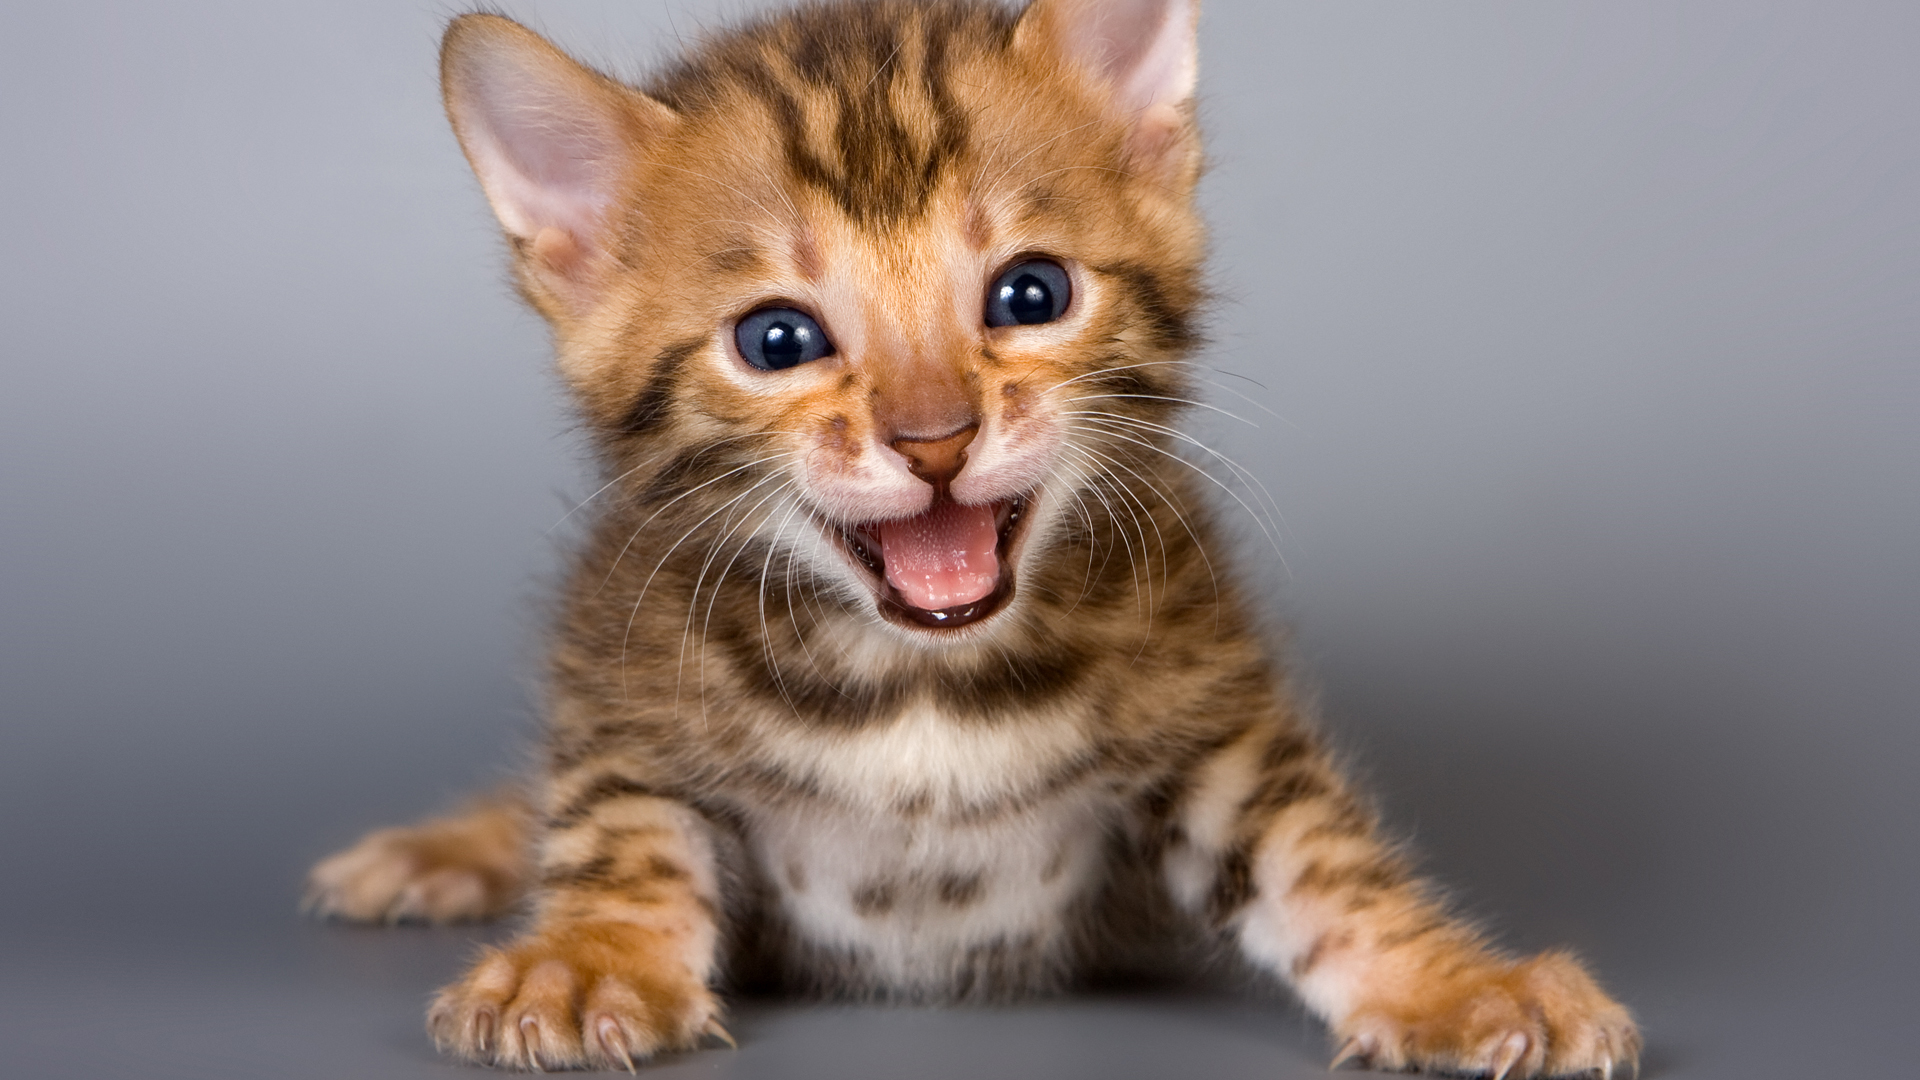 Los gatos tienen 'esos días' en los que simplemente no pueden parar de maullar. (Shutterstock)
